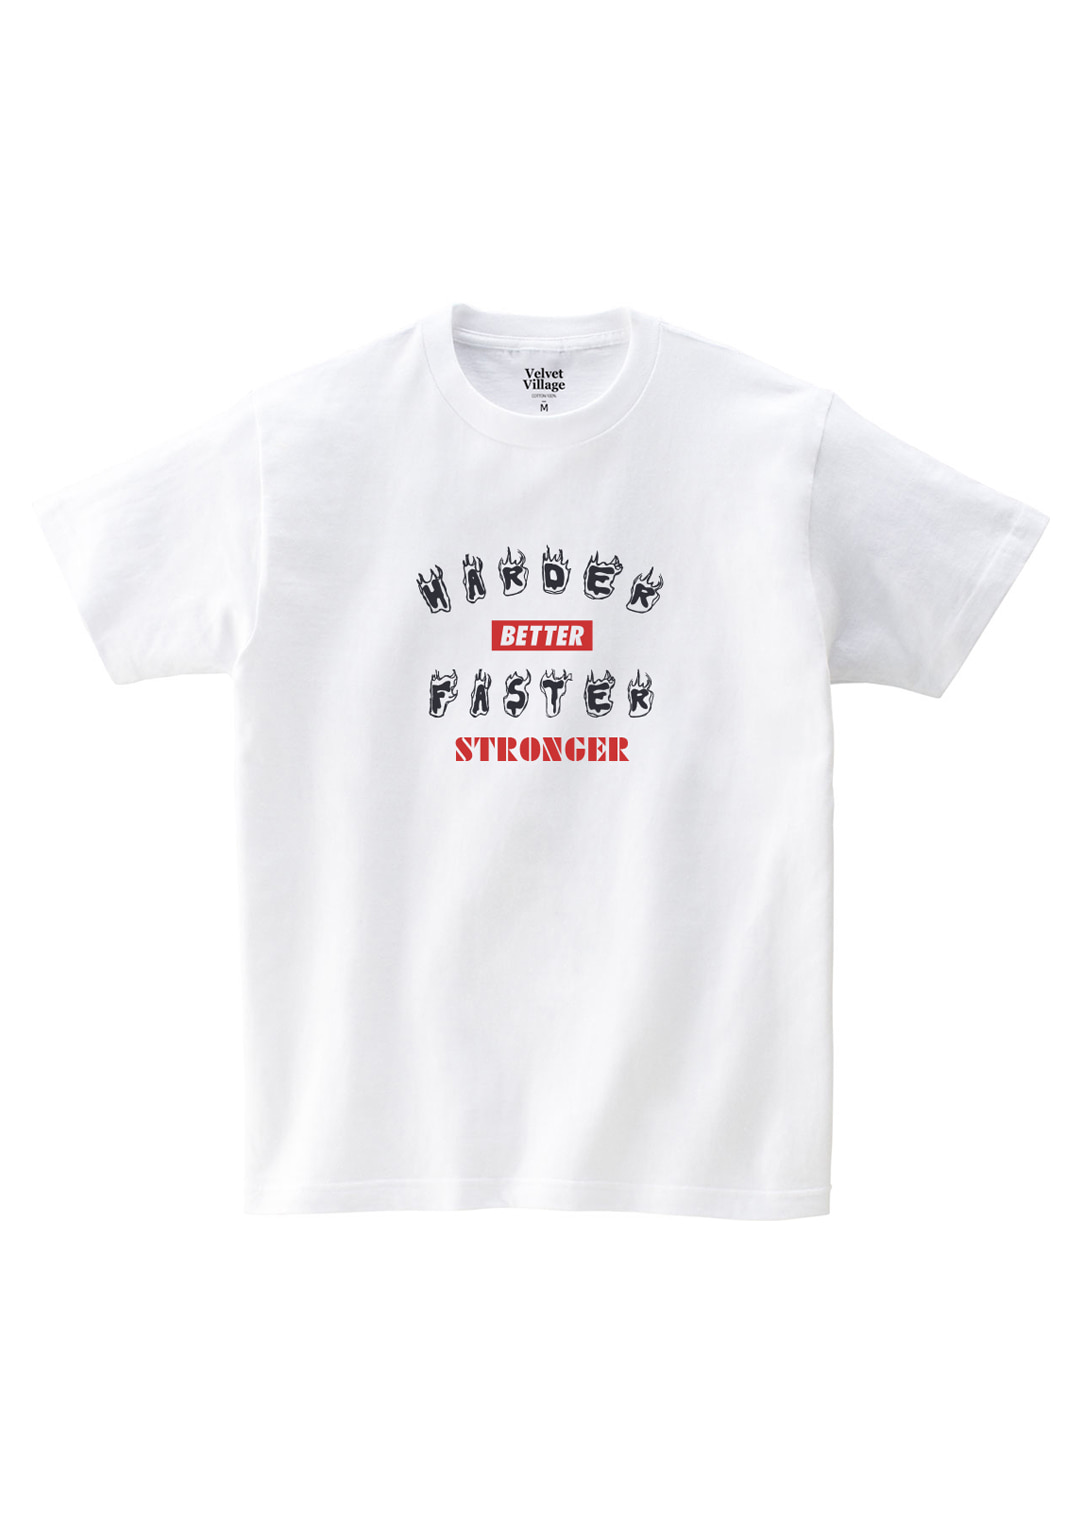 HBFS T-shirt (White)